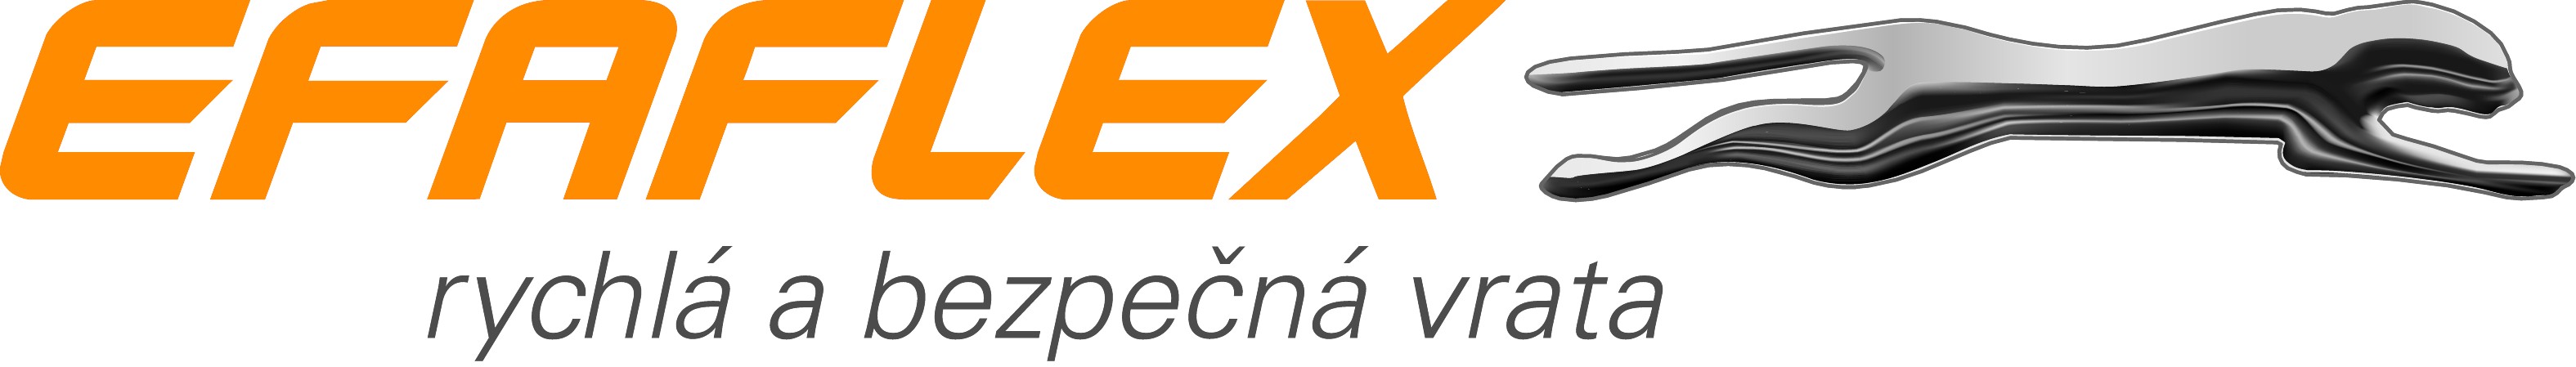 Efaflex_logo_tschechisch_4c